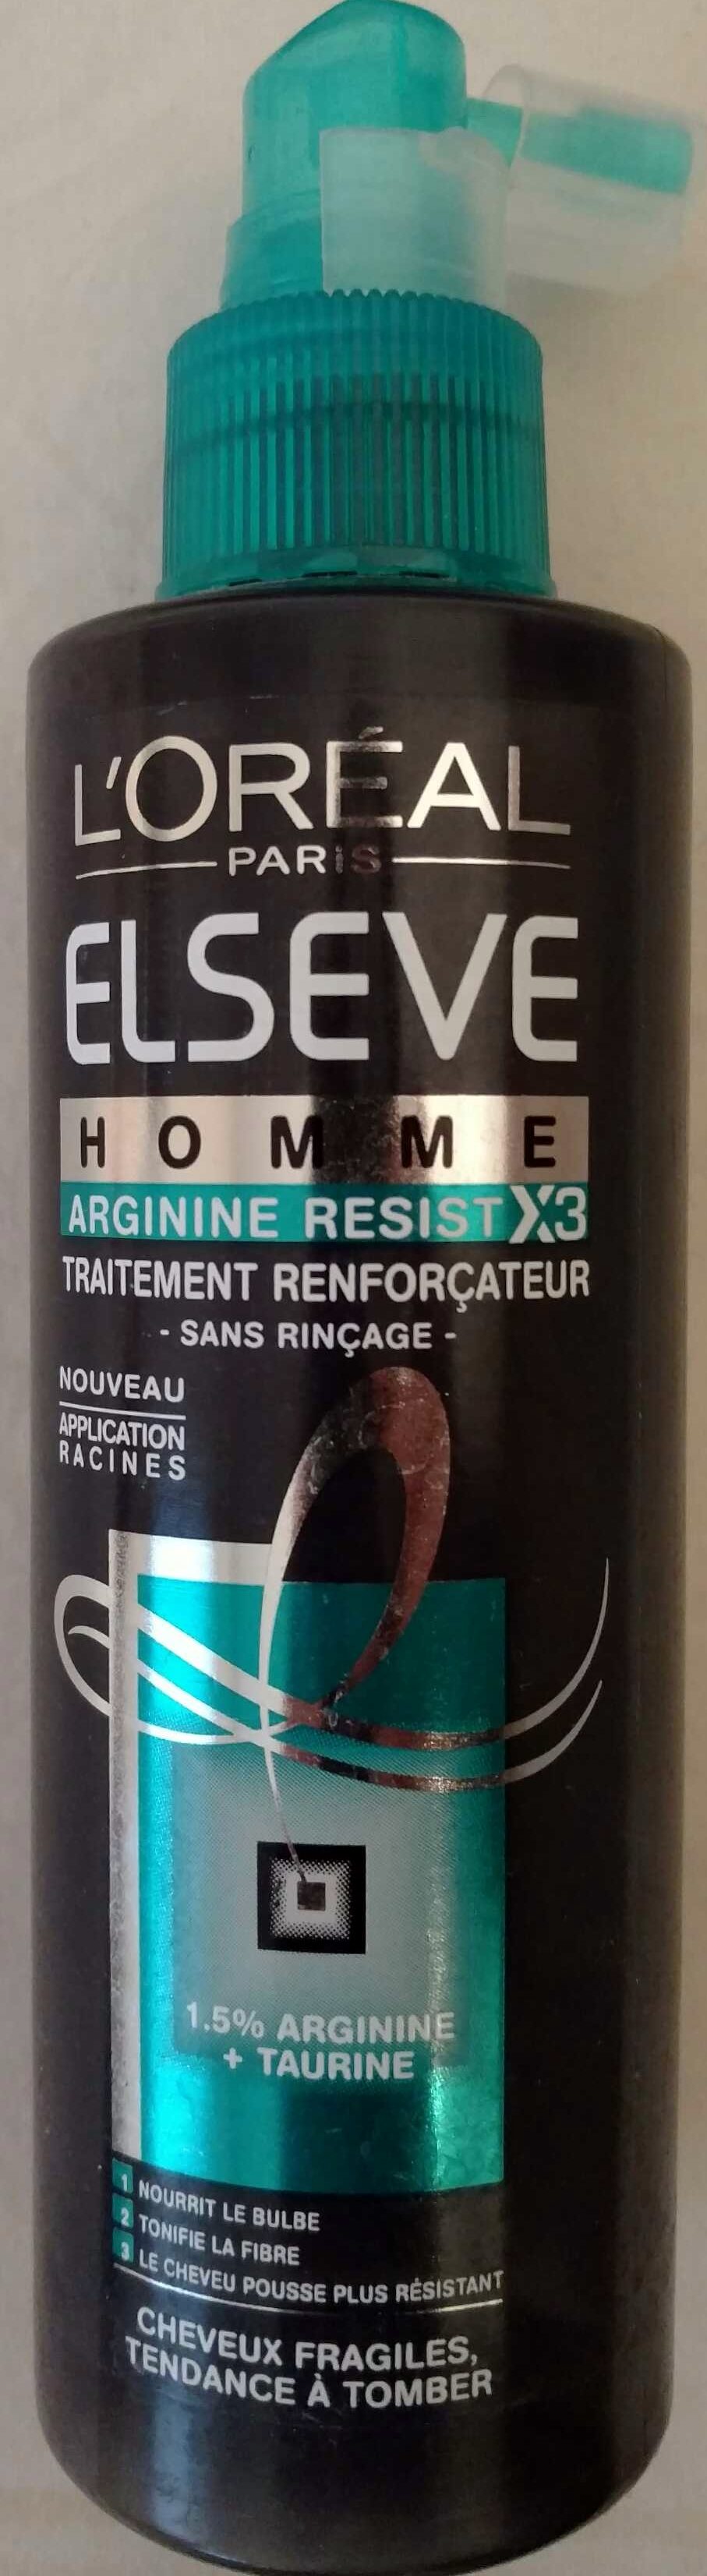 Arginine resist X3 - Traitement renforçateur - Product - fr